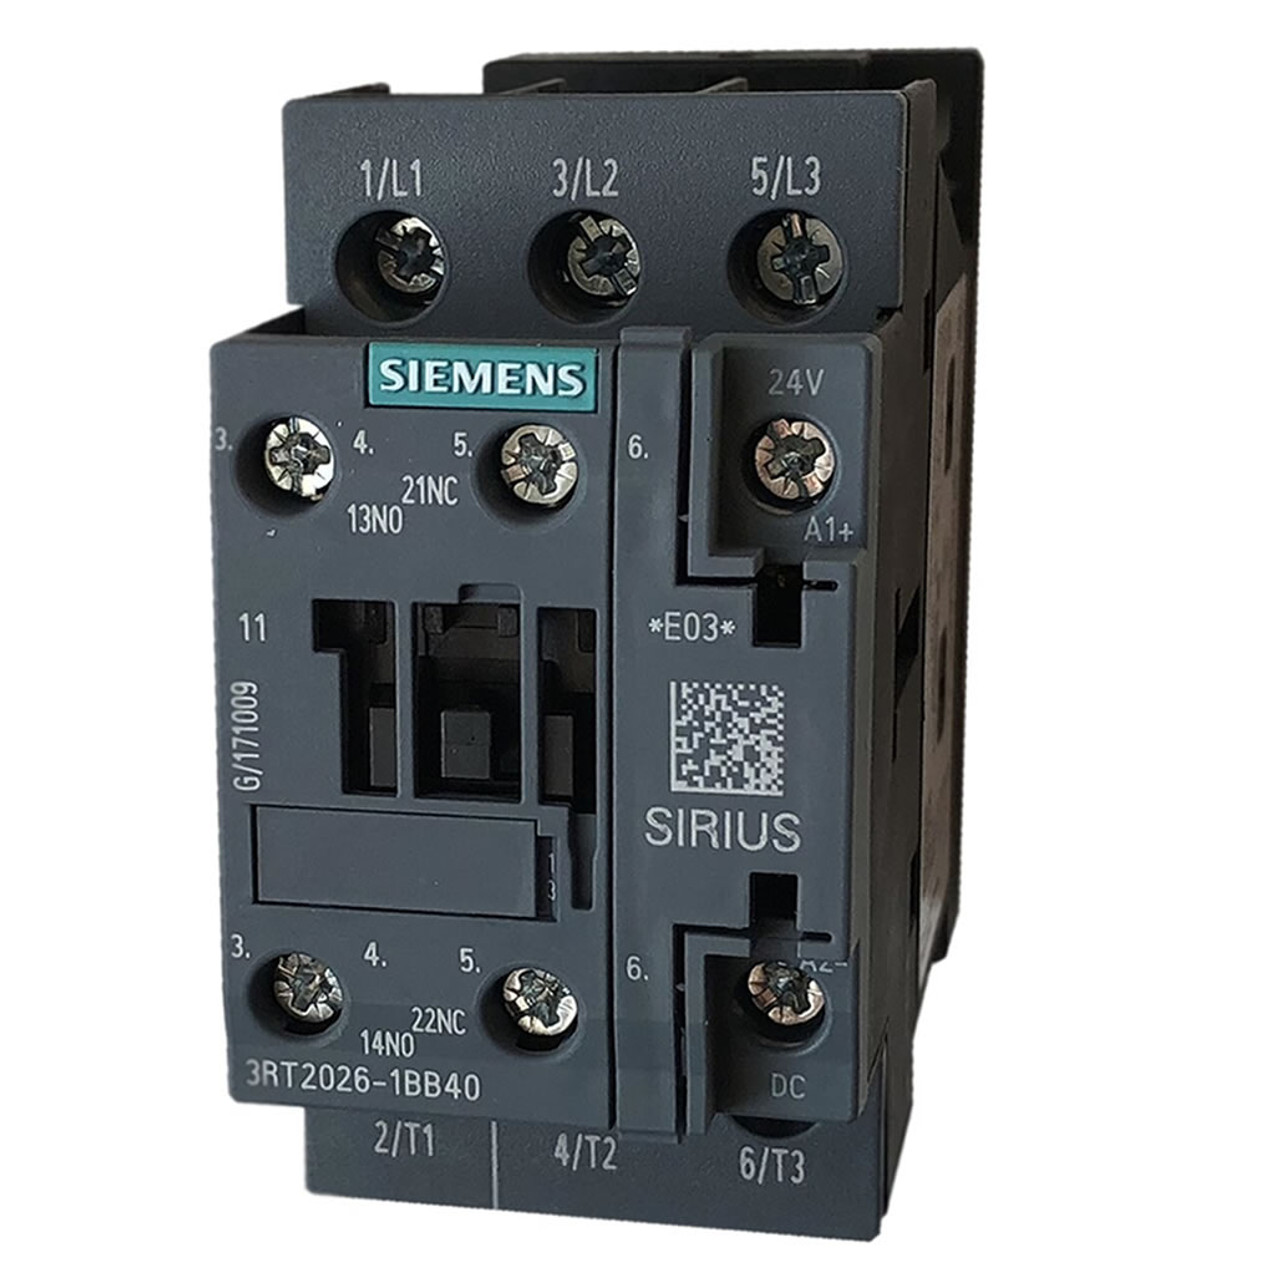 Siemens 3RT2026-1BP40 contactor